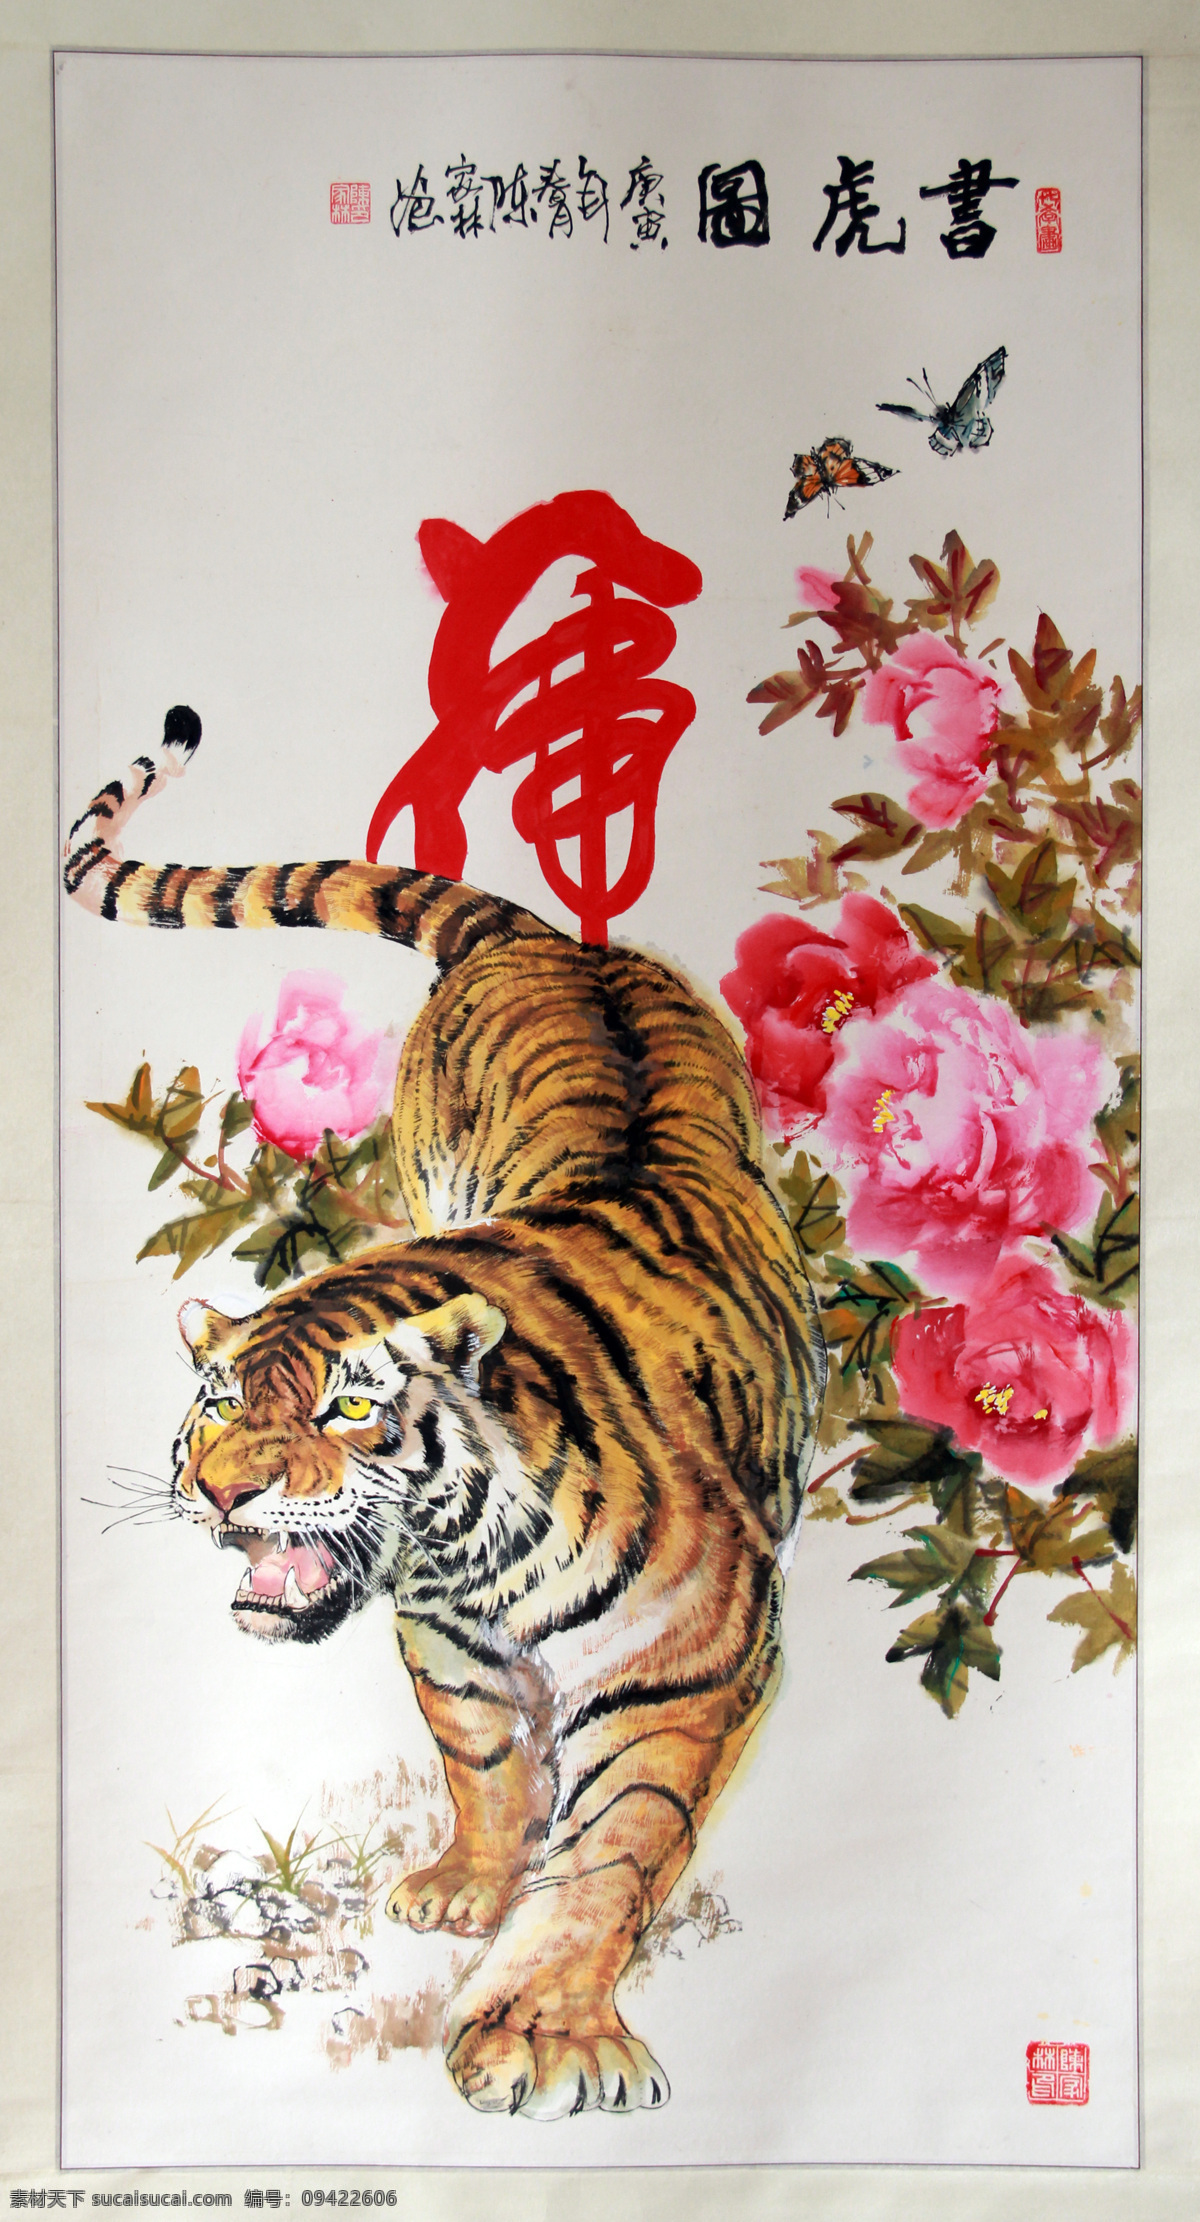 老虎 牡丹老虎 下山虎 猛兽 虎 国画 绘画书法 文化艺术